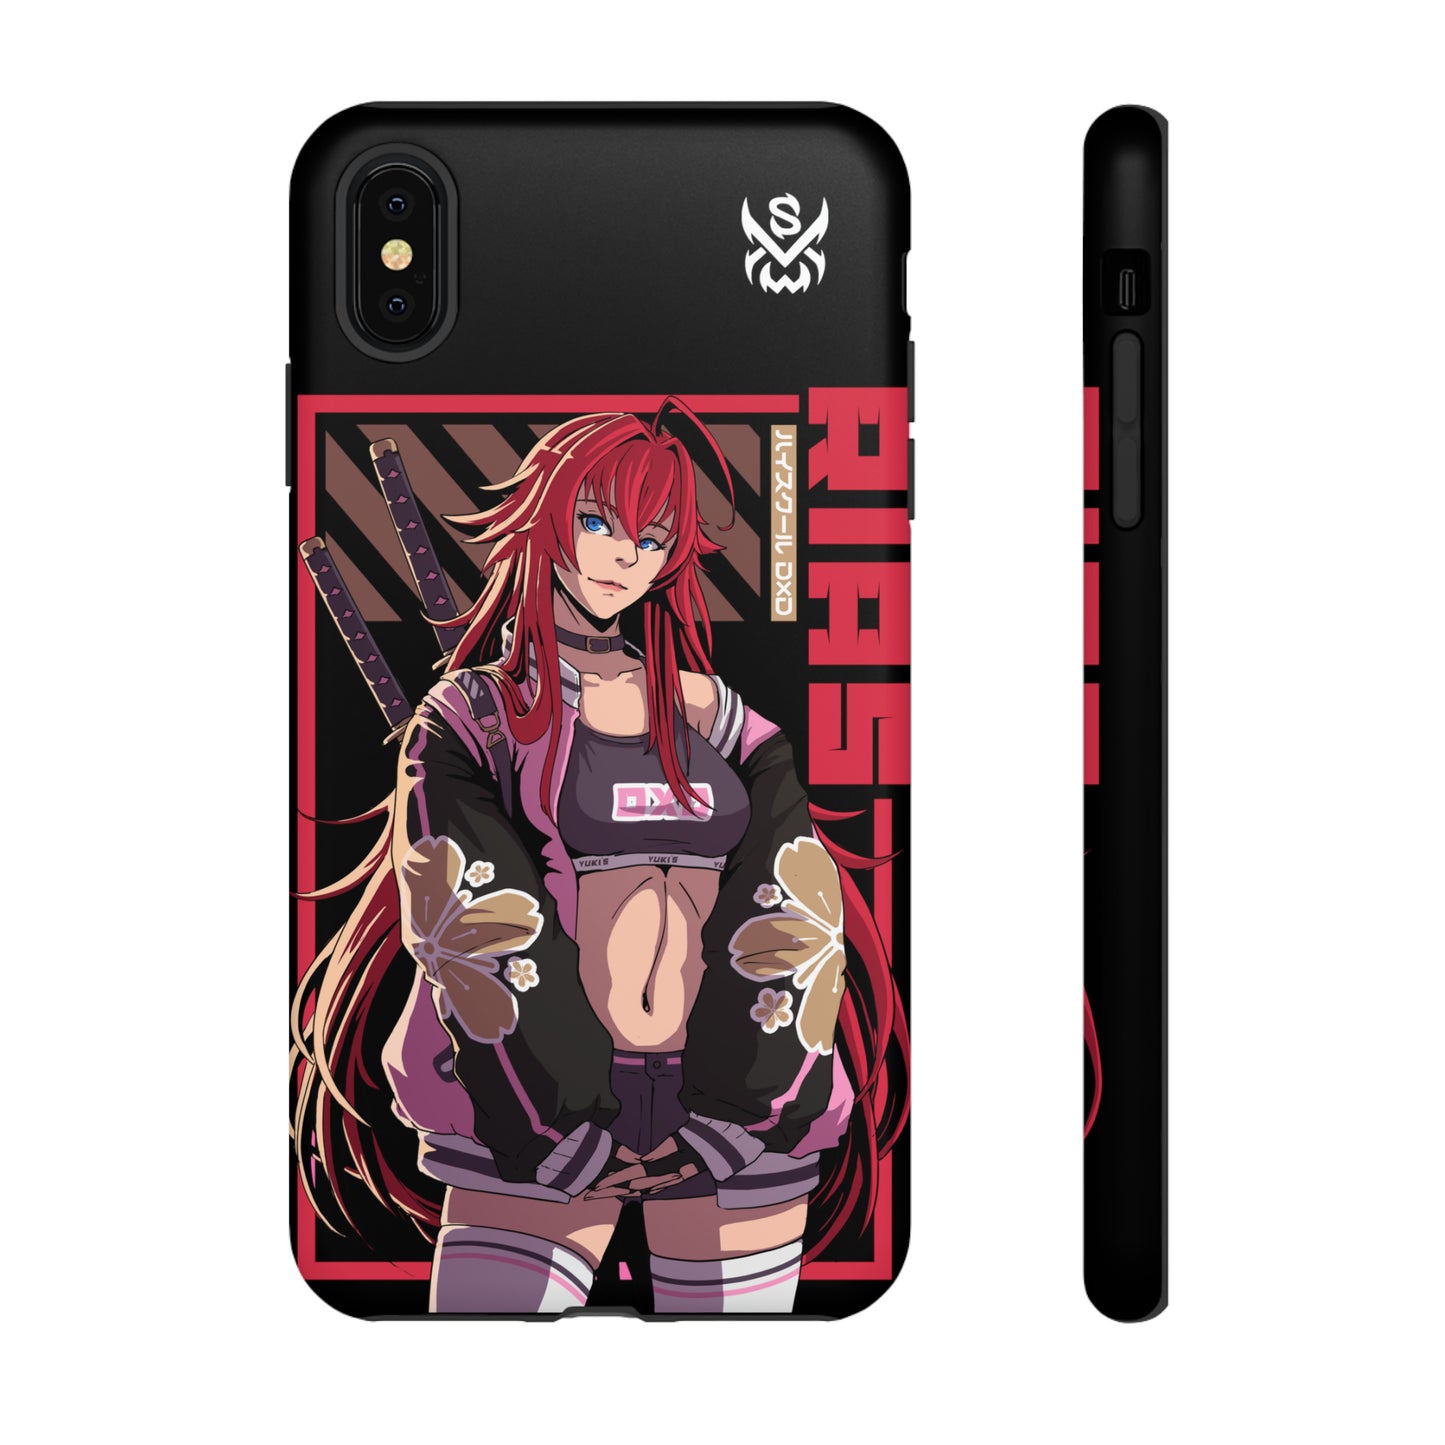 Crimson / iPhone Case